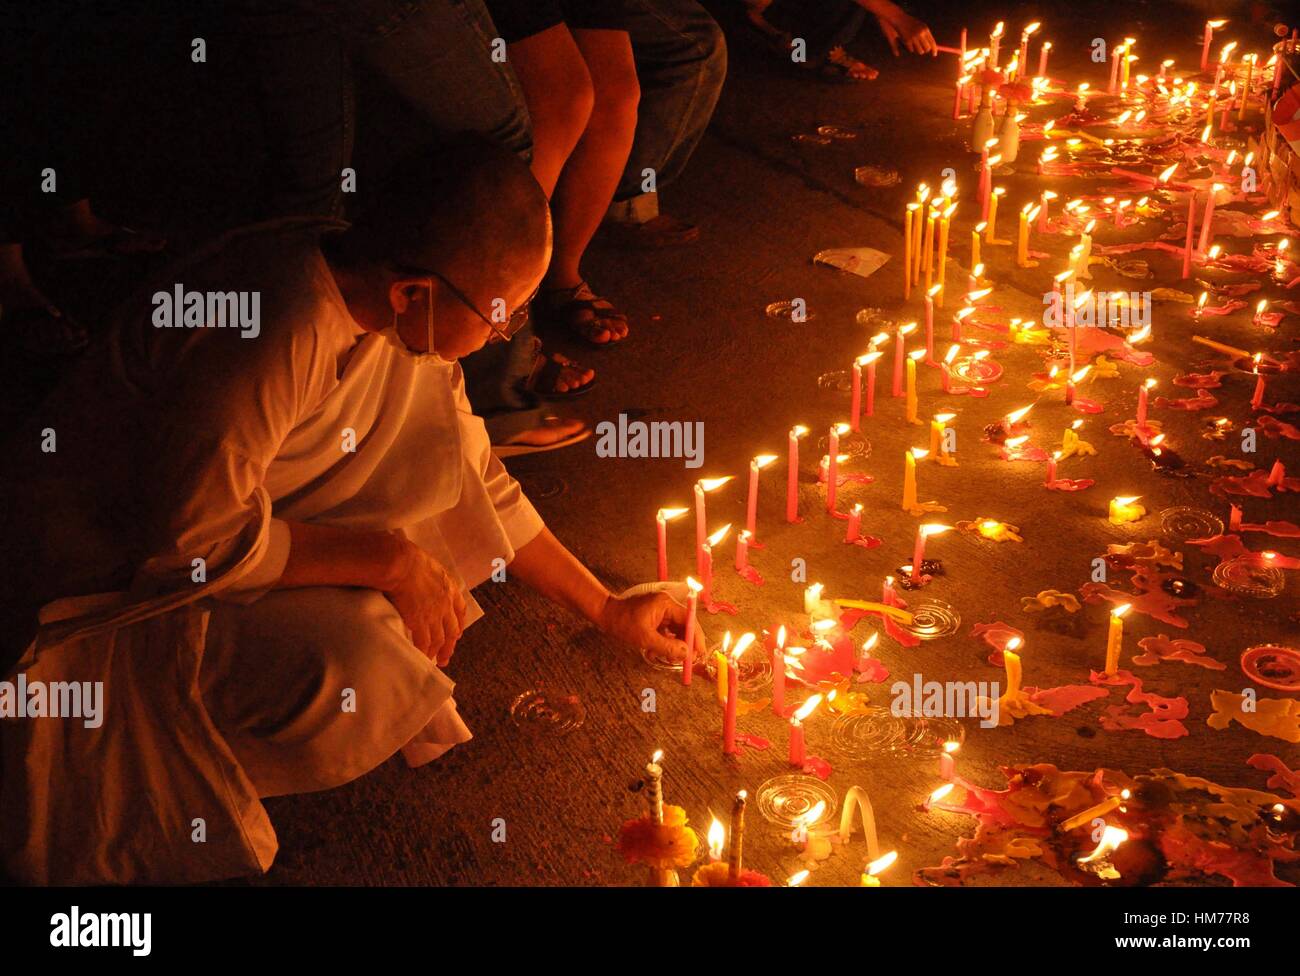 Thailand, Bangkok, einem weiblichen Mönch Anzünden einer Kerze zum Gedenken  an König Bhumibol Adulyadej Geburtstag Stockfotografie - Alamy